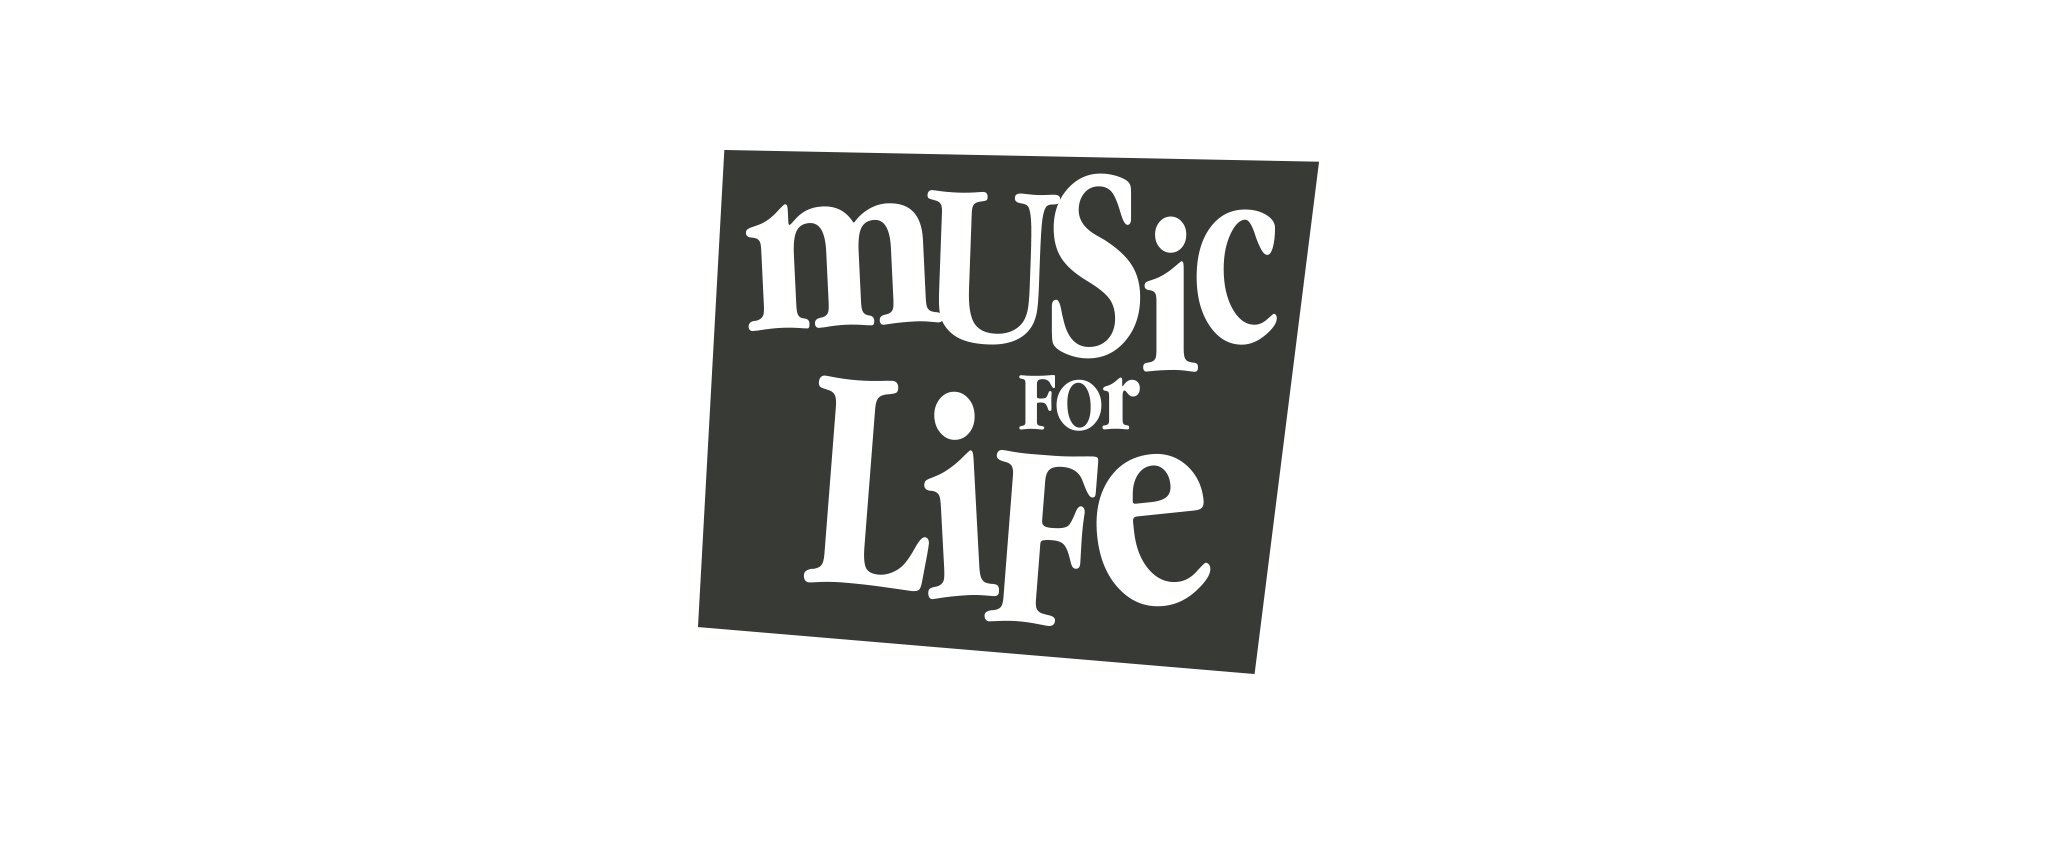 Music for Life - Black logo